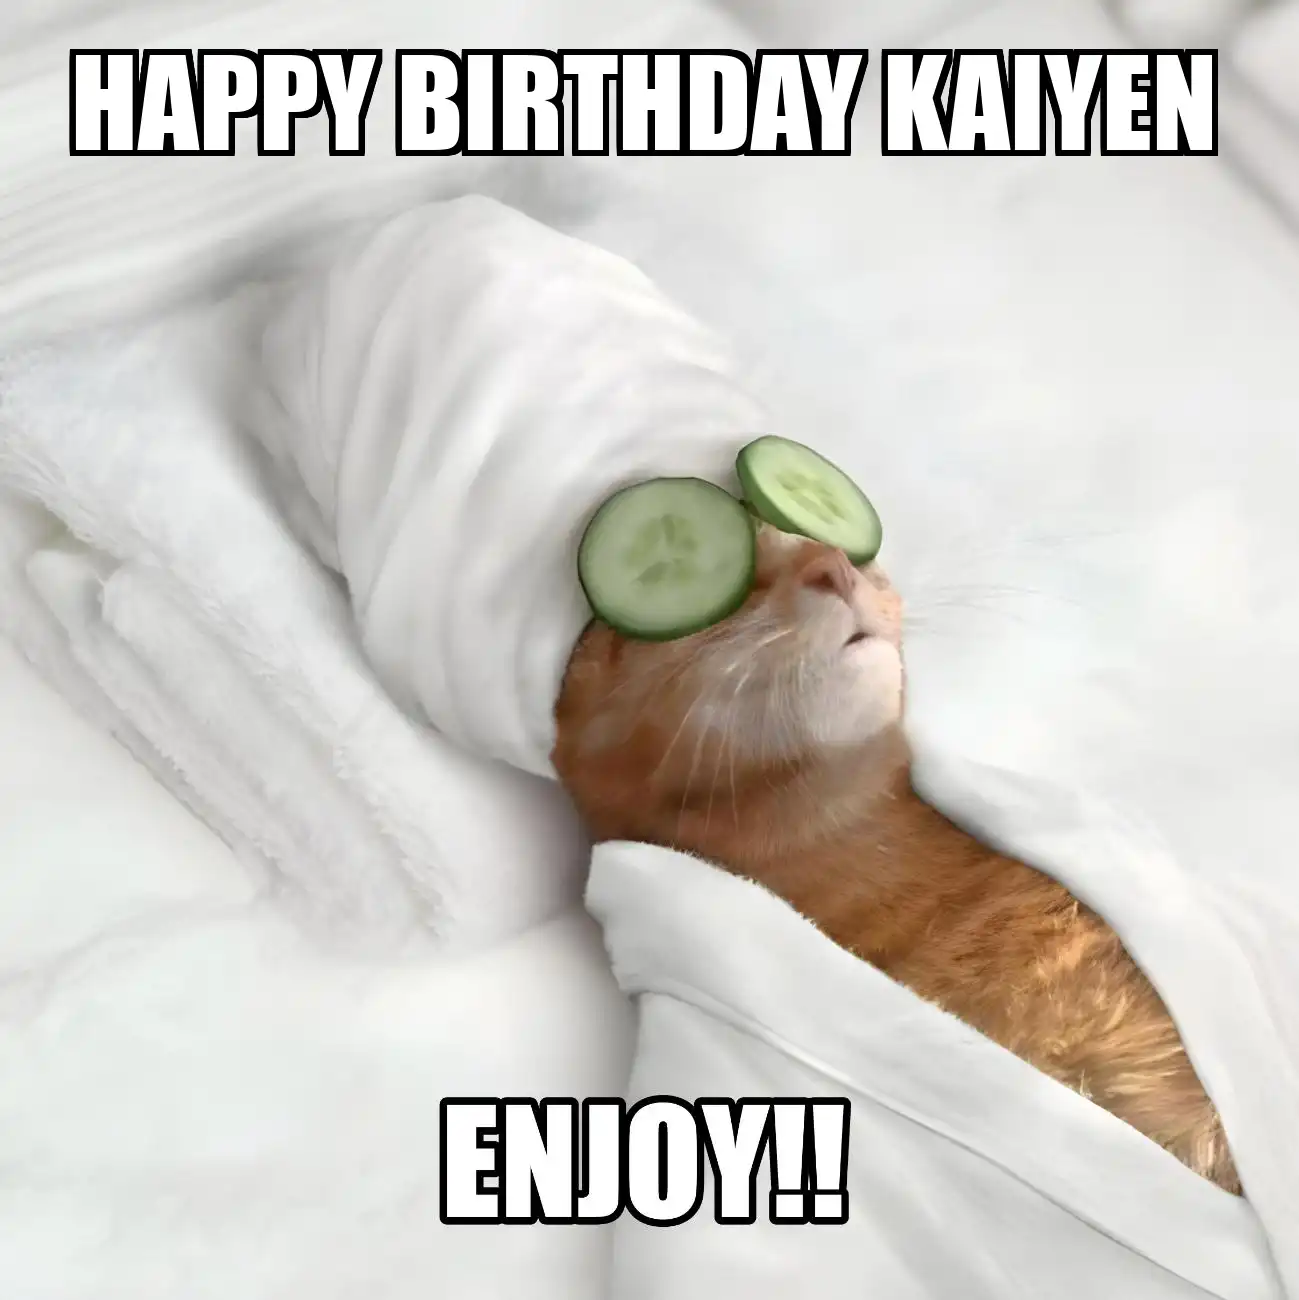 Happy Birthday Kaiyen Enjoy Cat Meme